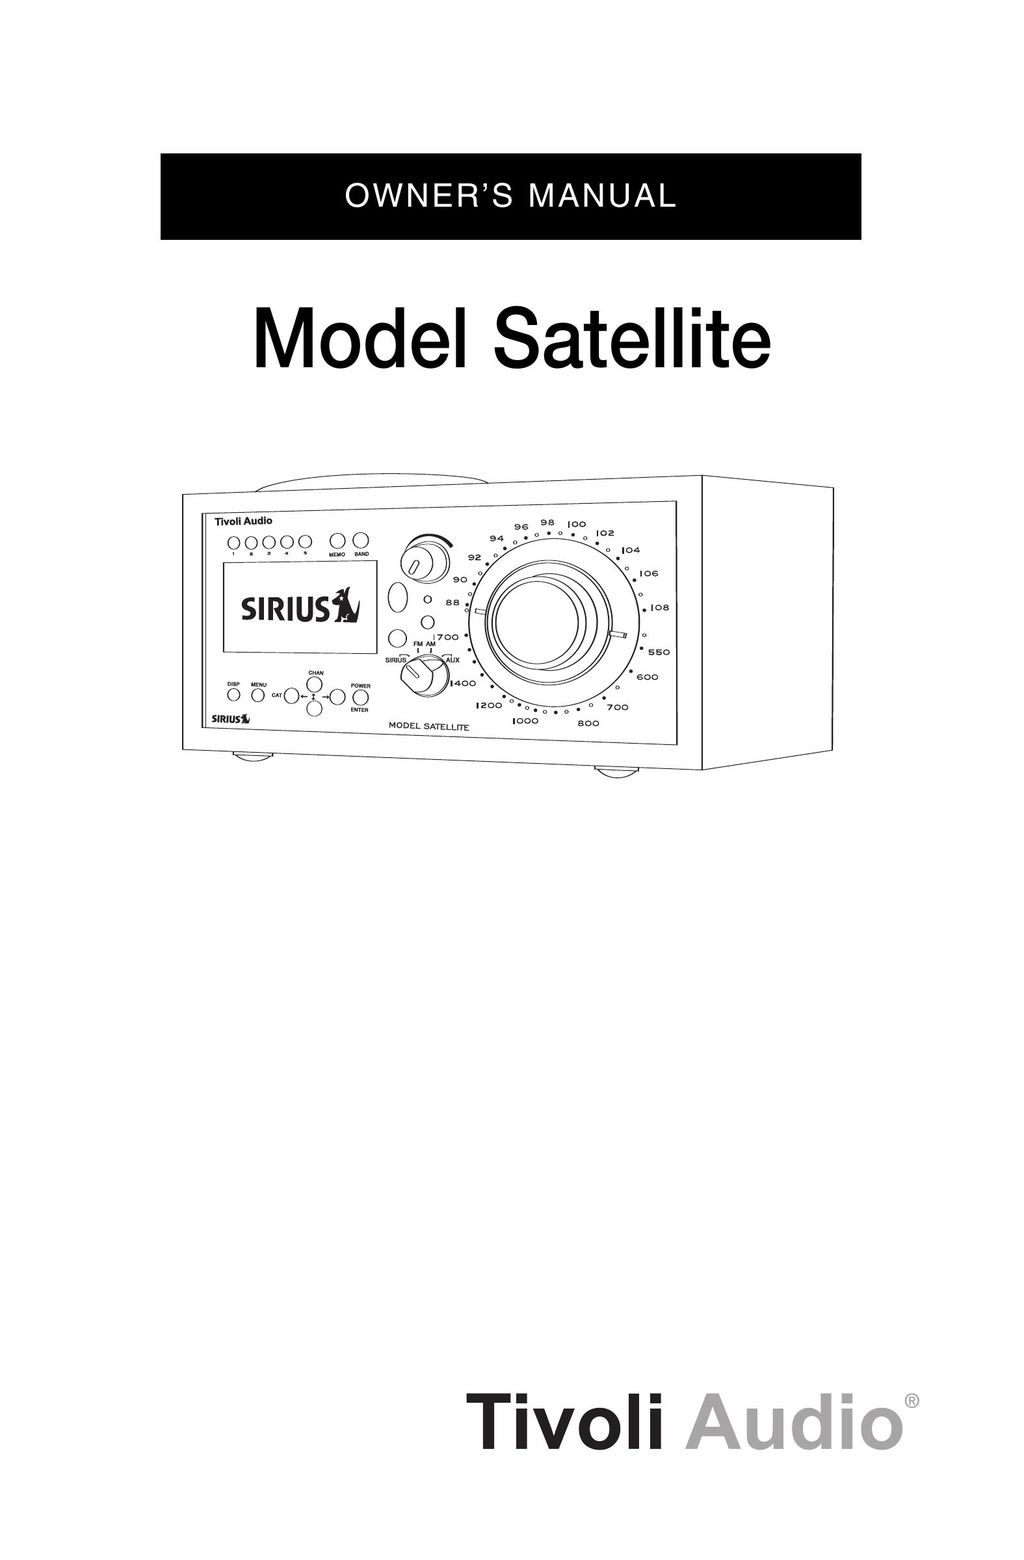 Sirius Satellite Radio Model Satellite Satellite Radio User Manual